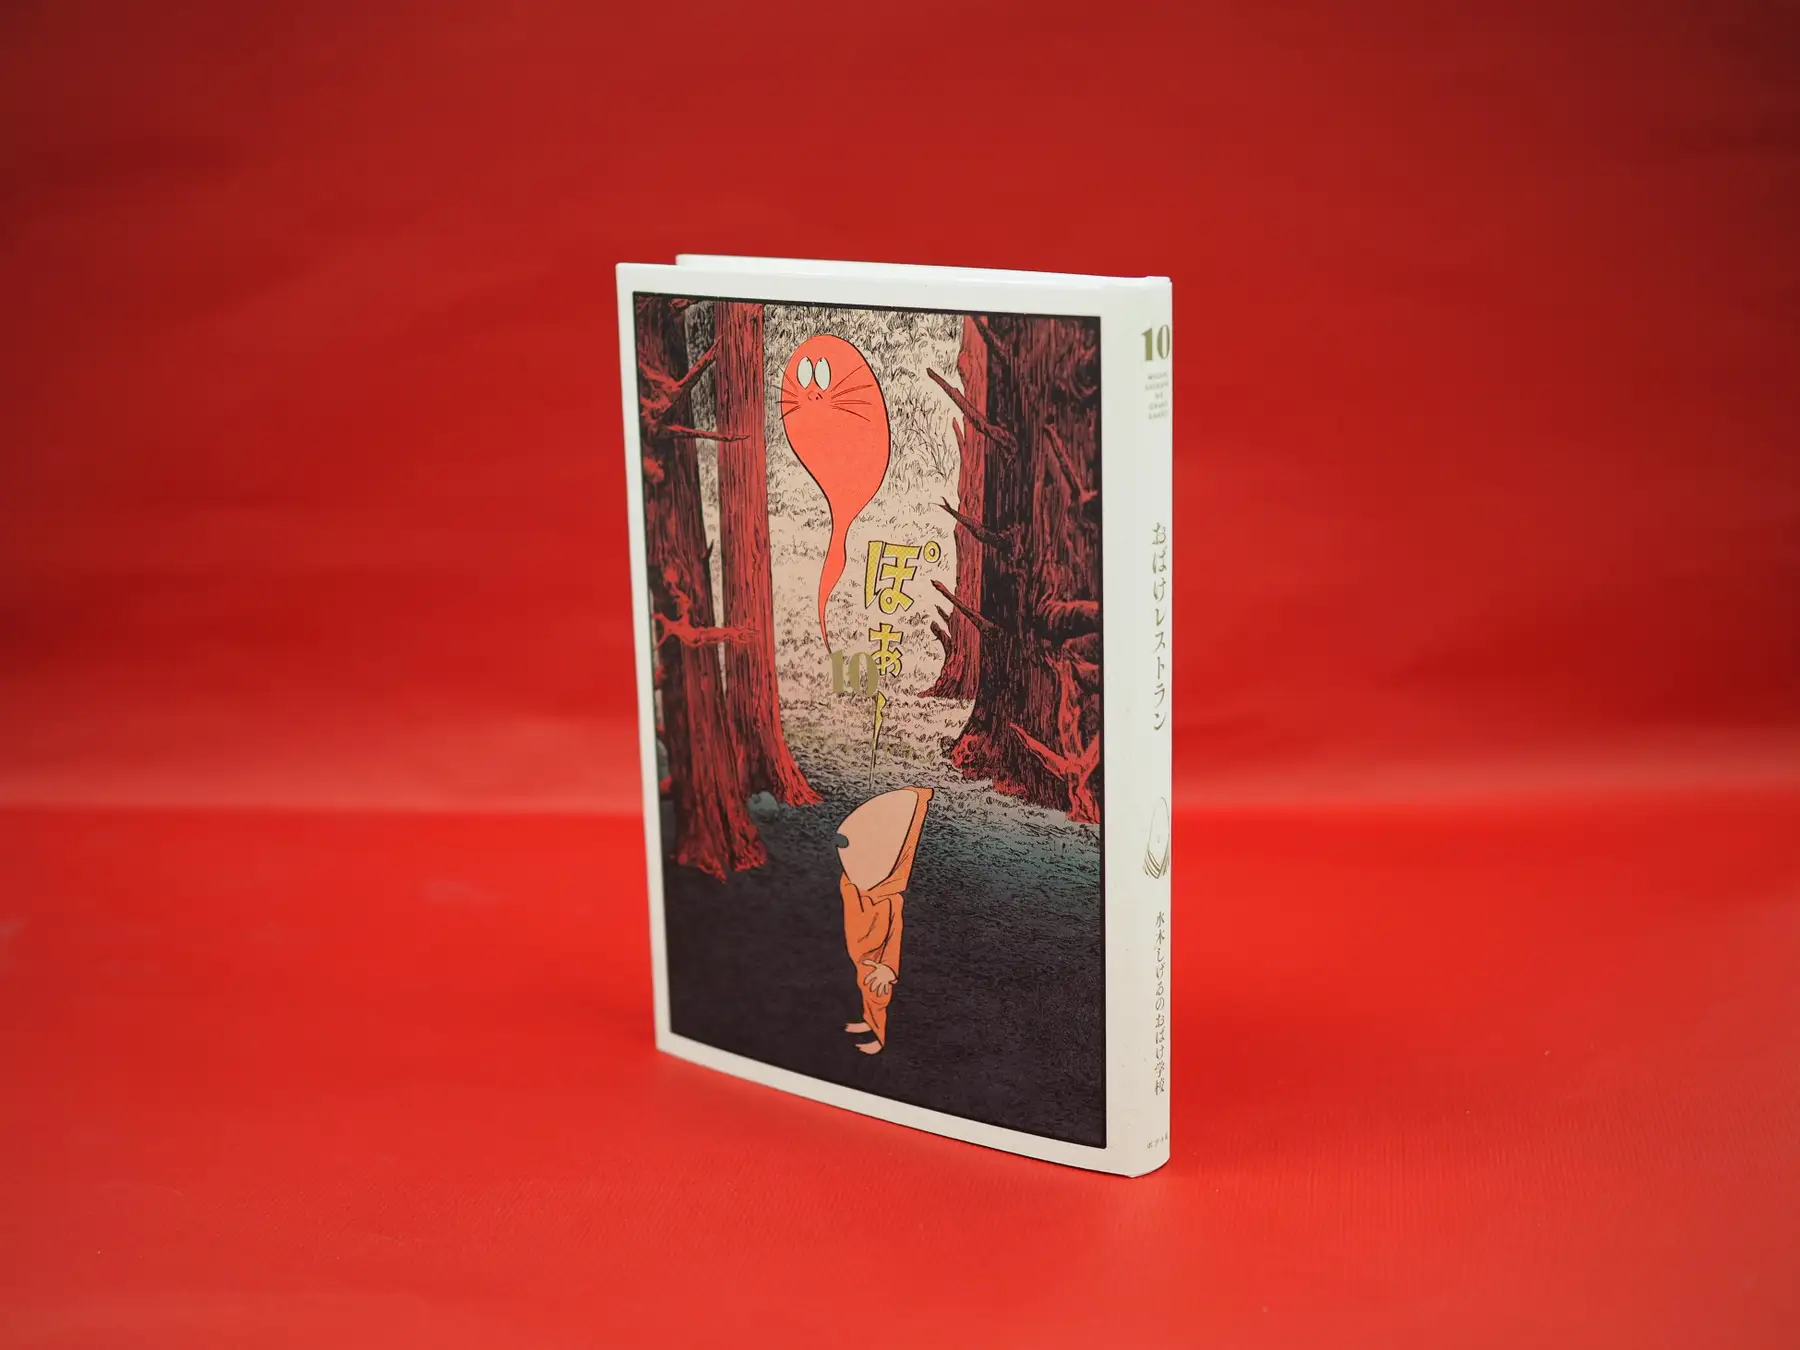 『ゲゲゲの鬼太郎』などを絵本として描いた『水木しげるのおばけ学校』が豪華版BOXで登場_012